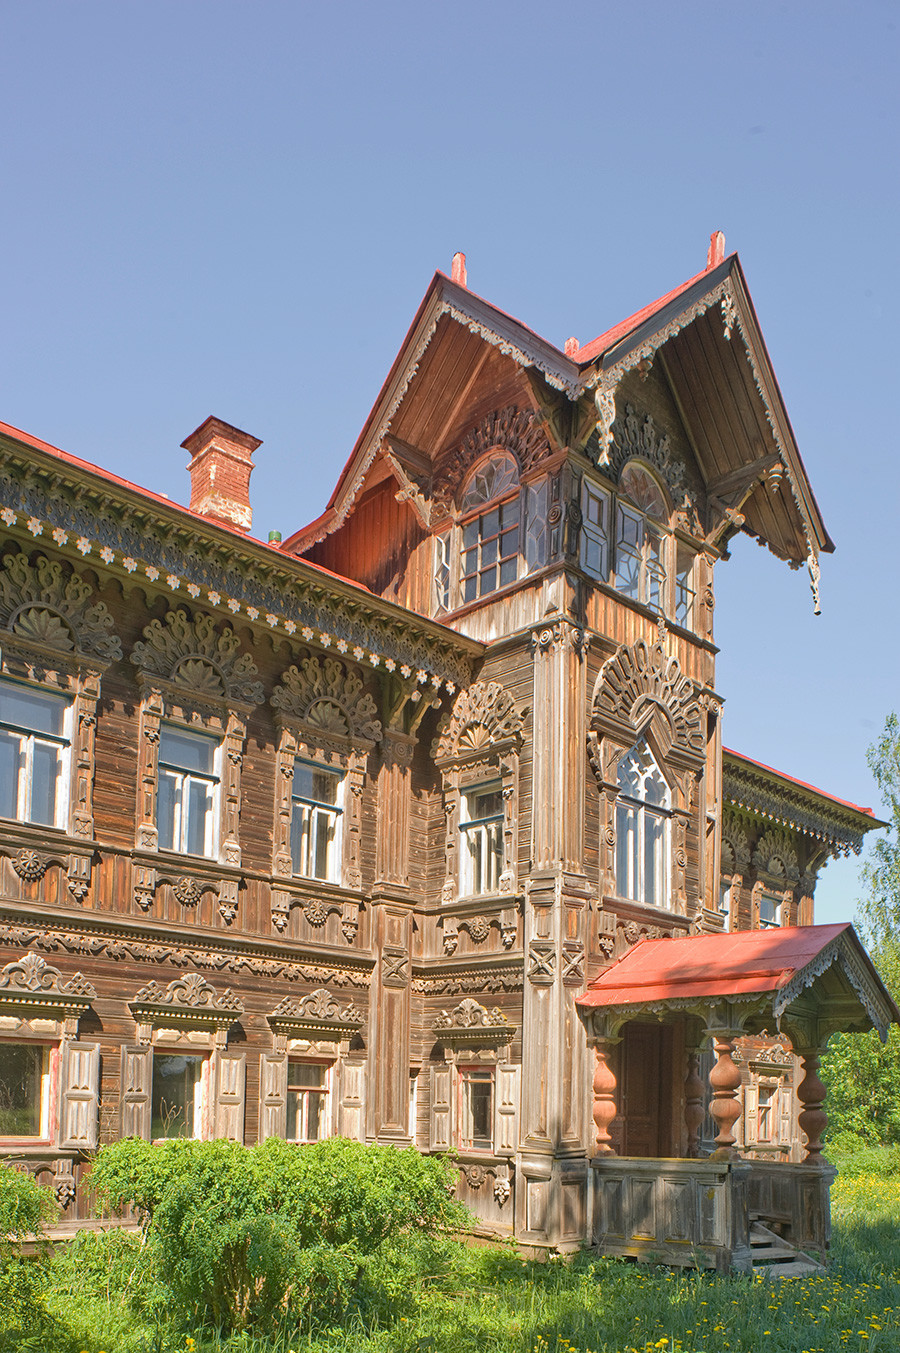 (gambar)

Rumah Poliashov. Menara pusat dengan pintu masuk utama, pemandangan barat daya. 29 Mei 2016.